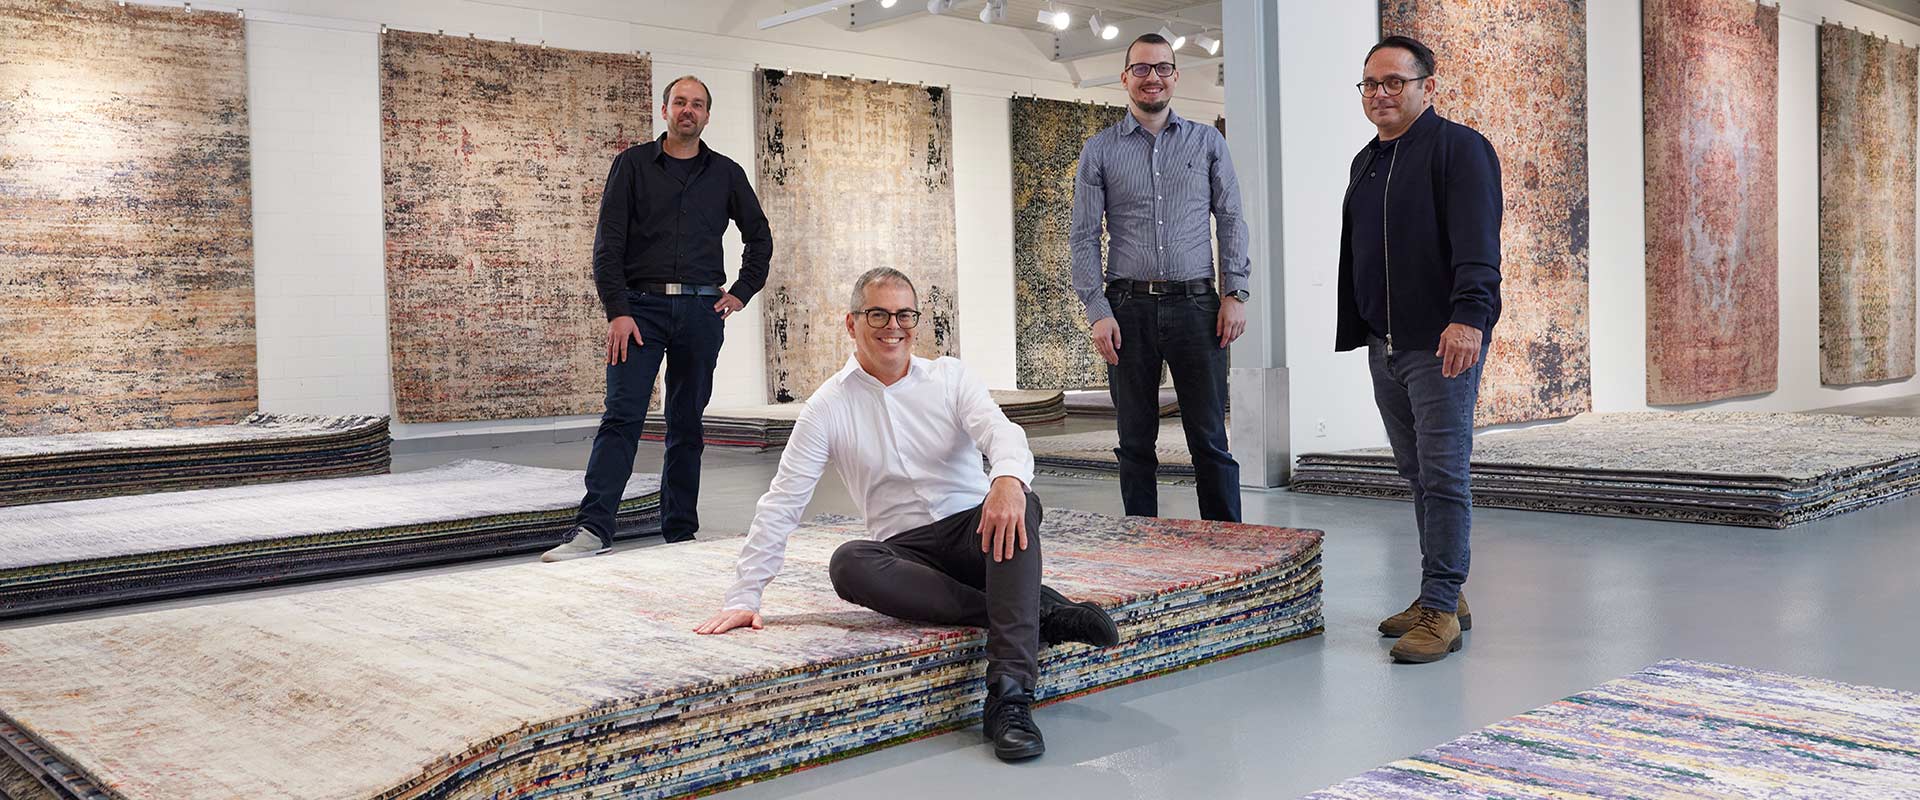 Vier Männer in einer Teppichgalerie mit mehreren aufgehängten und gestapelten Teppichen verschiedener Muster und Farben. Einer sitzt im Vordergrund auf einem Stapel Teppiche, drei stehen im Hintergrund und lächeln in die Kamera.